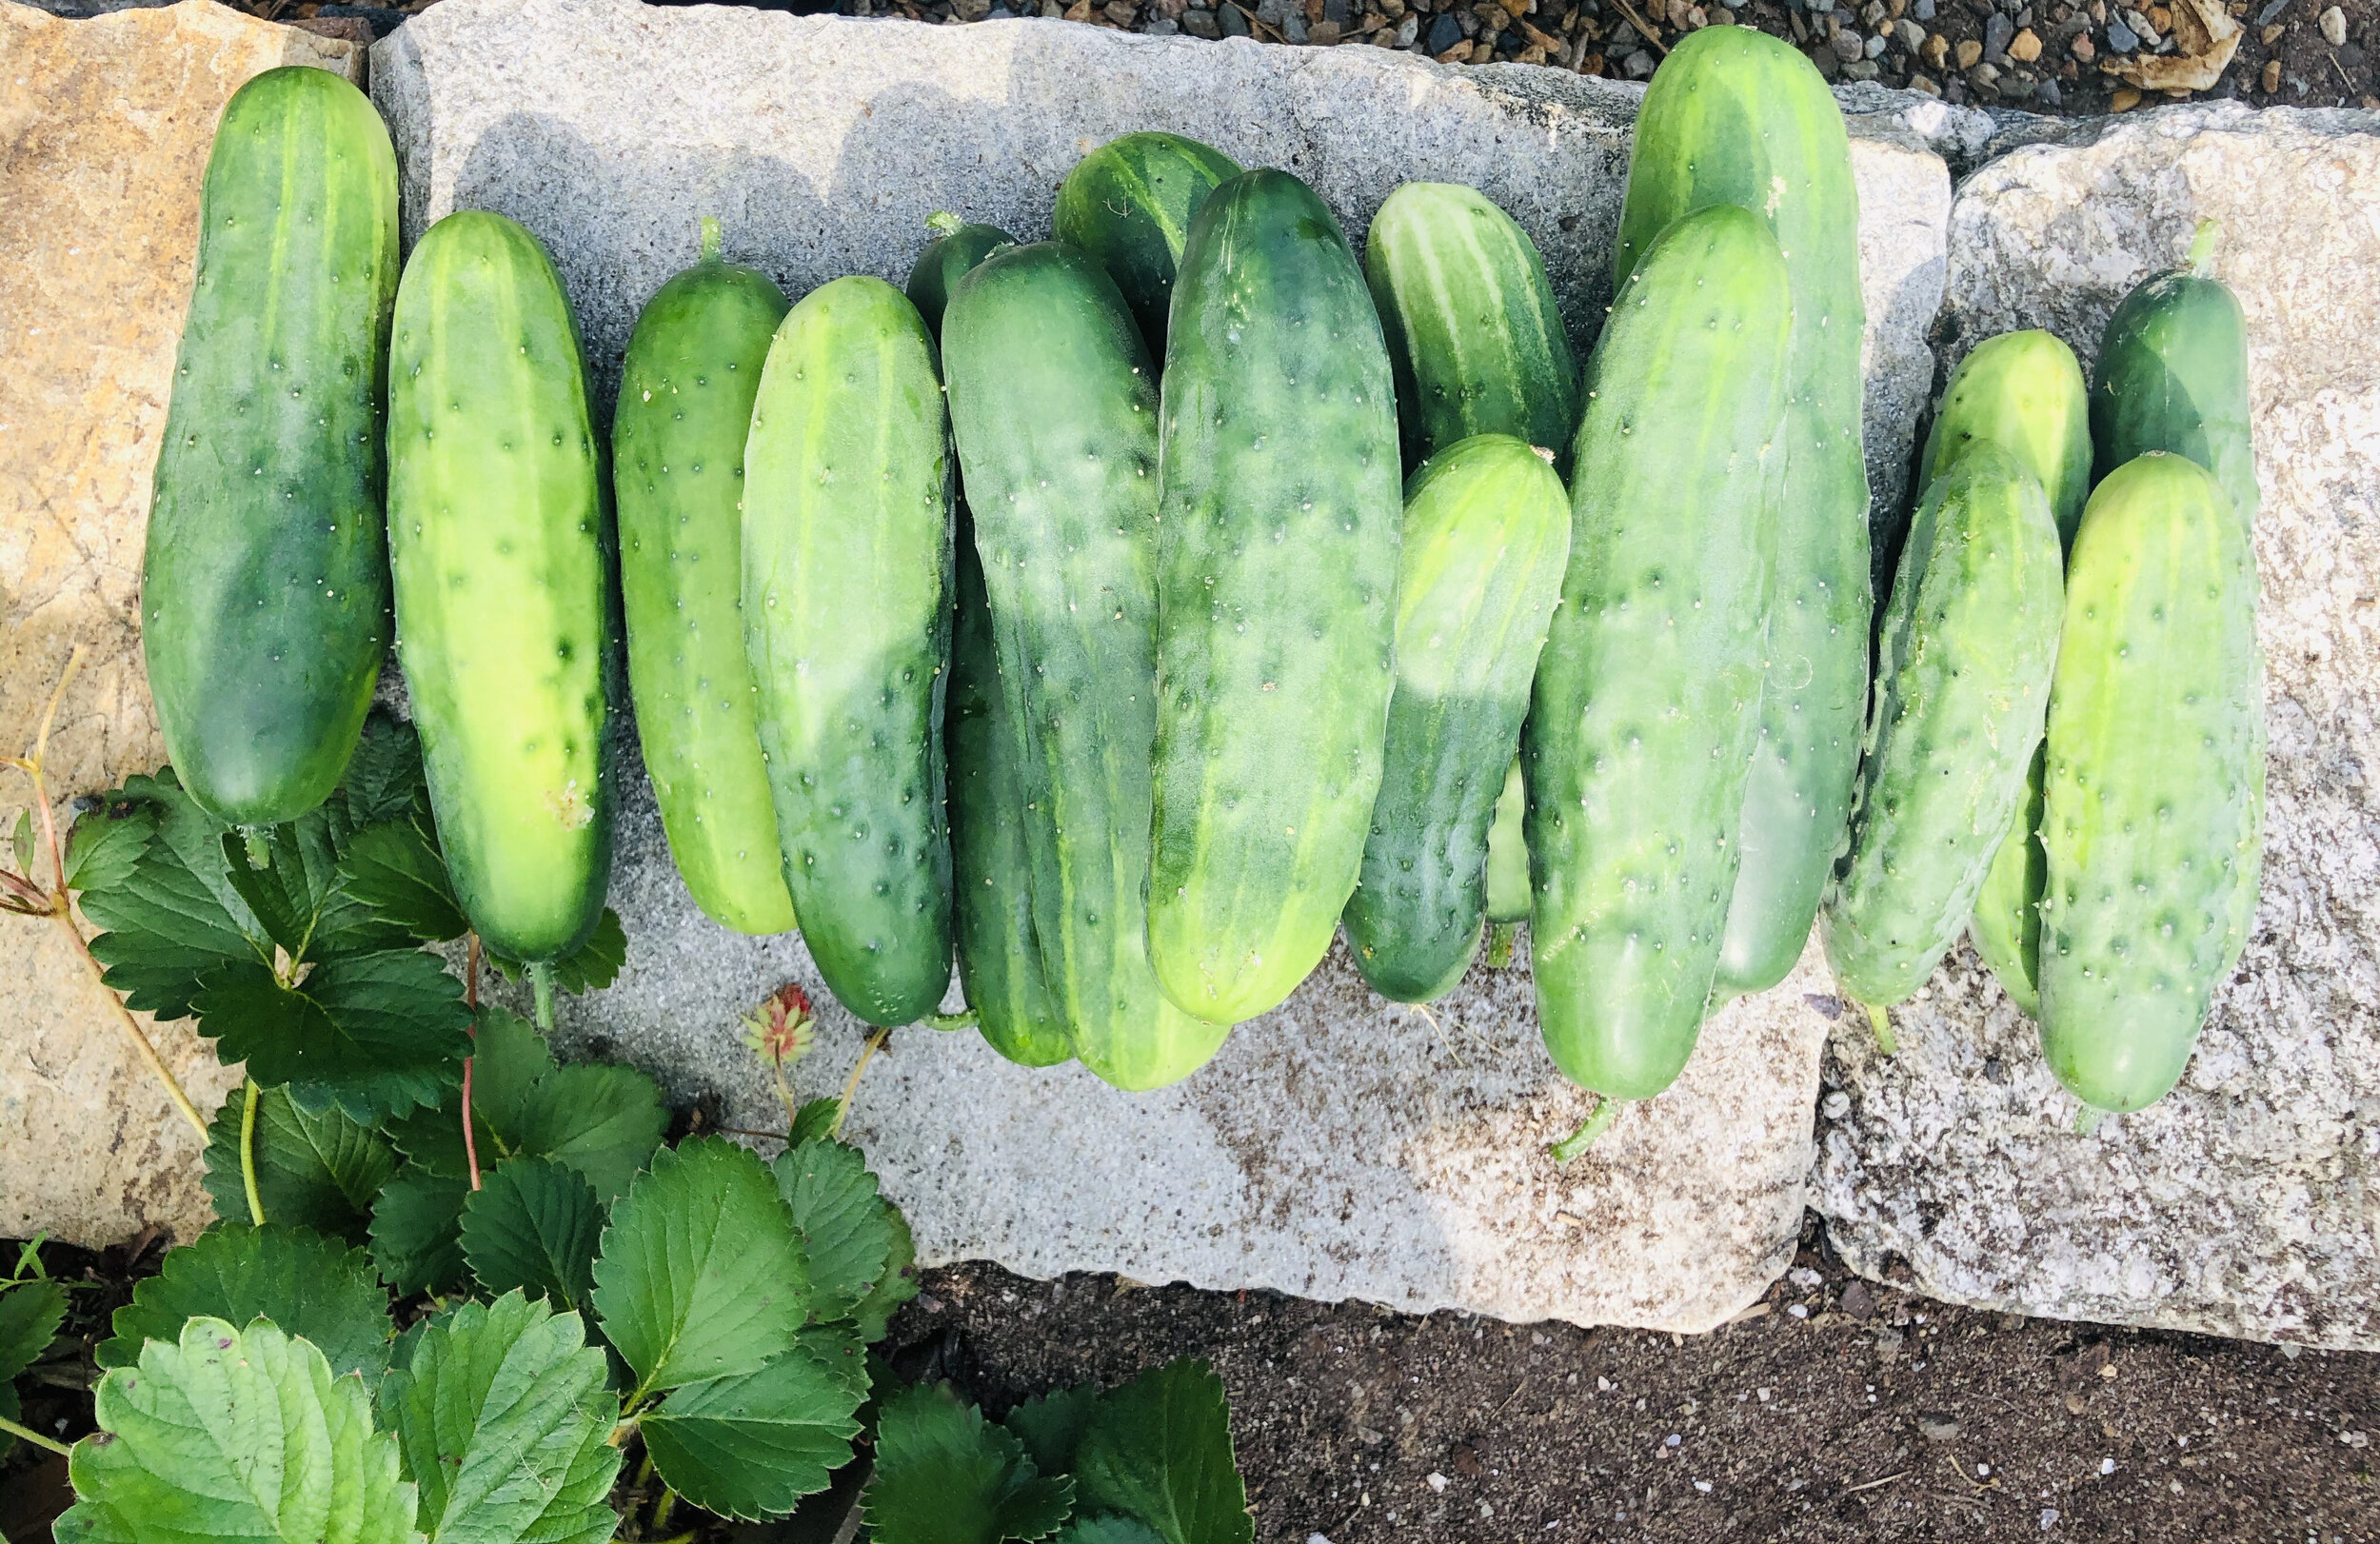 Cucumbers.jpg